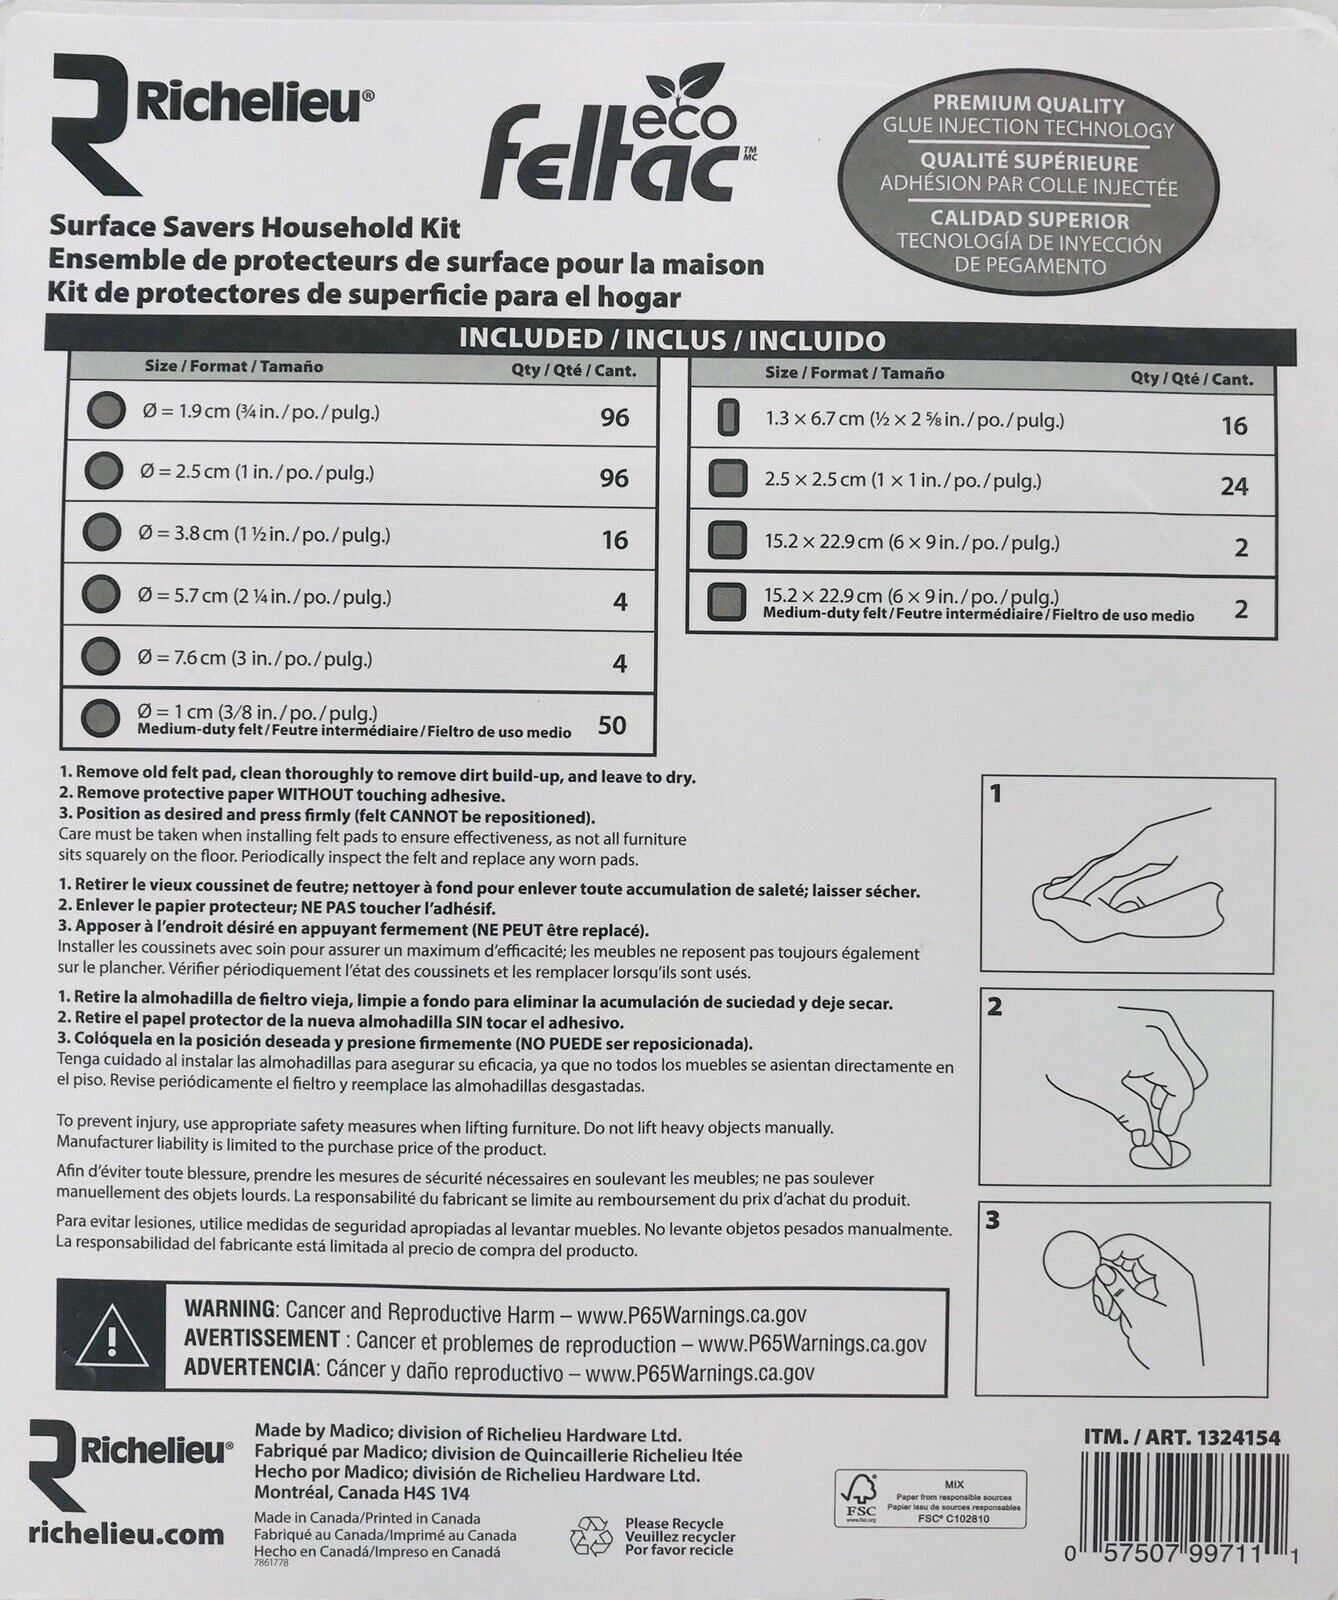 Details about   RICHELIEU Eco Feltac Surface Savers Household Kit 310 pieces storage bag 